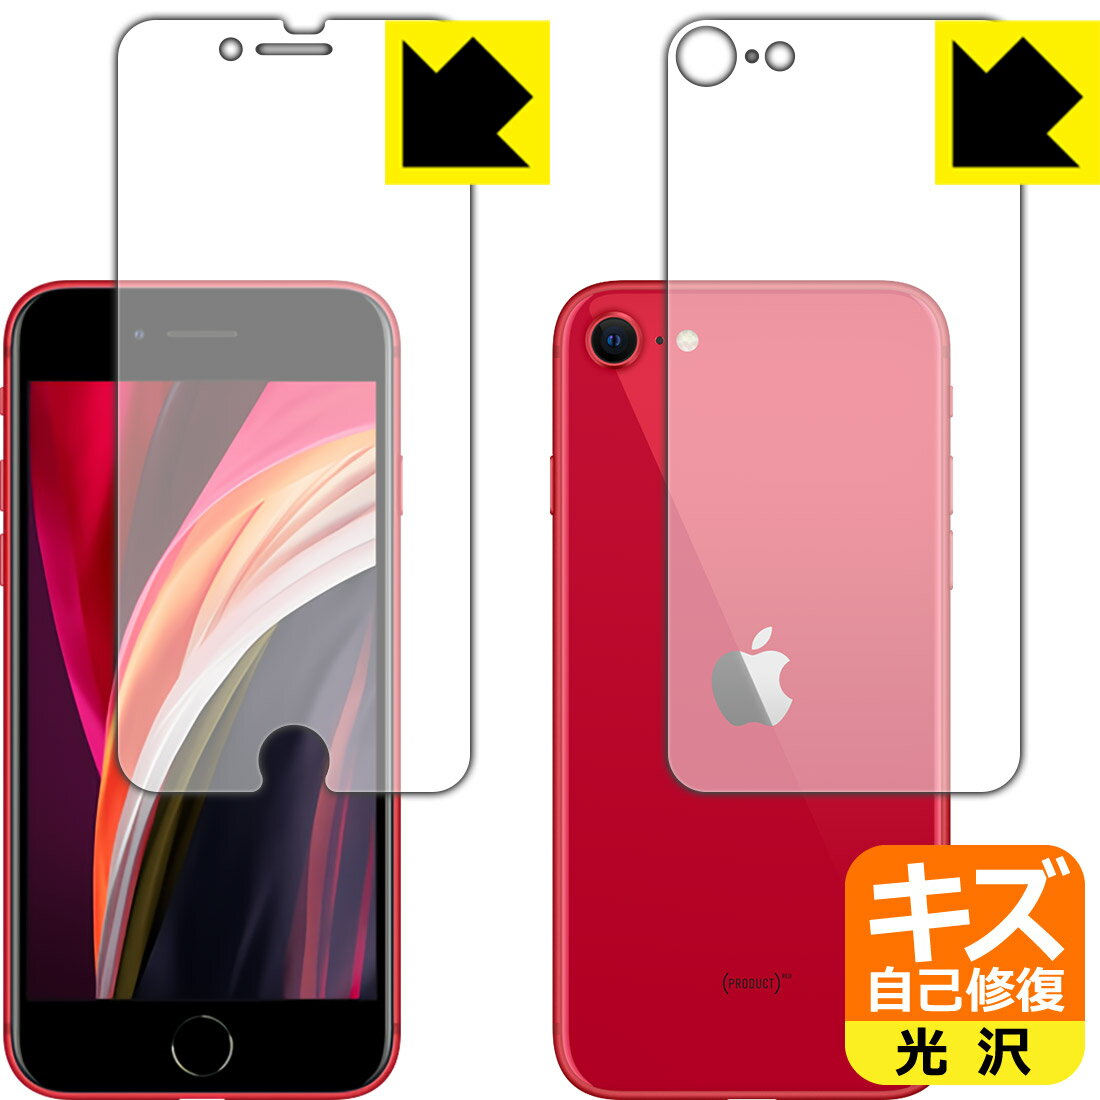 キズ自己修復保護フィルム iPhone SE (第2世代) 両面セット 【O型】 日本製 自社製造直販